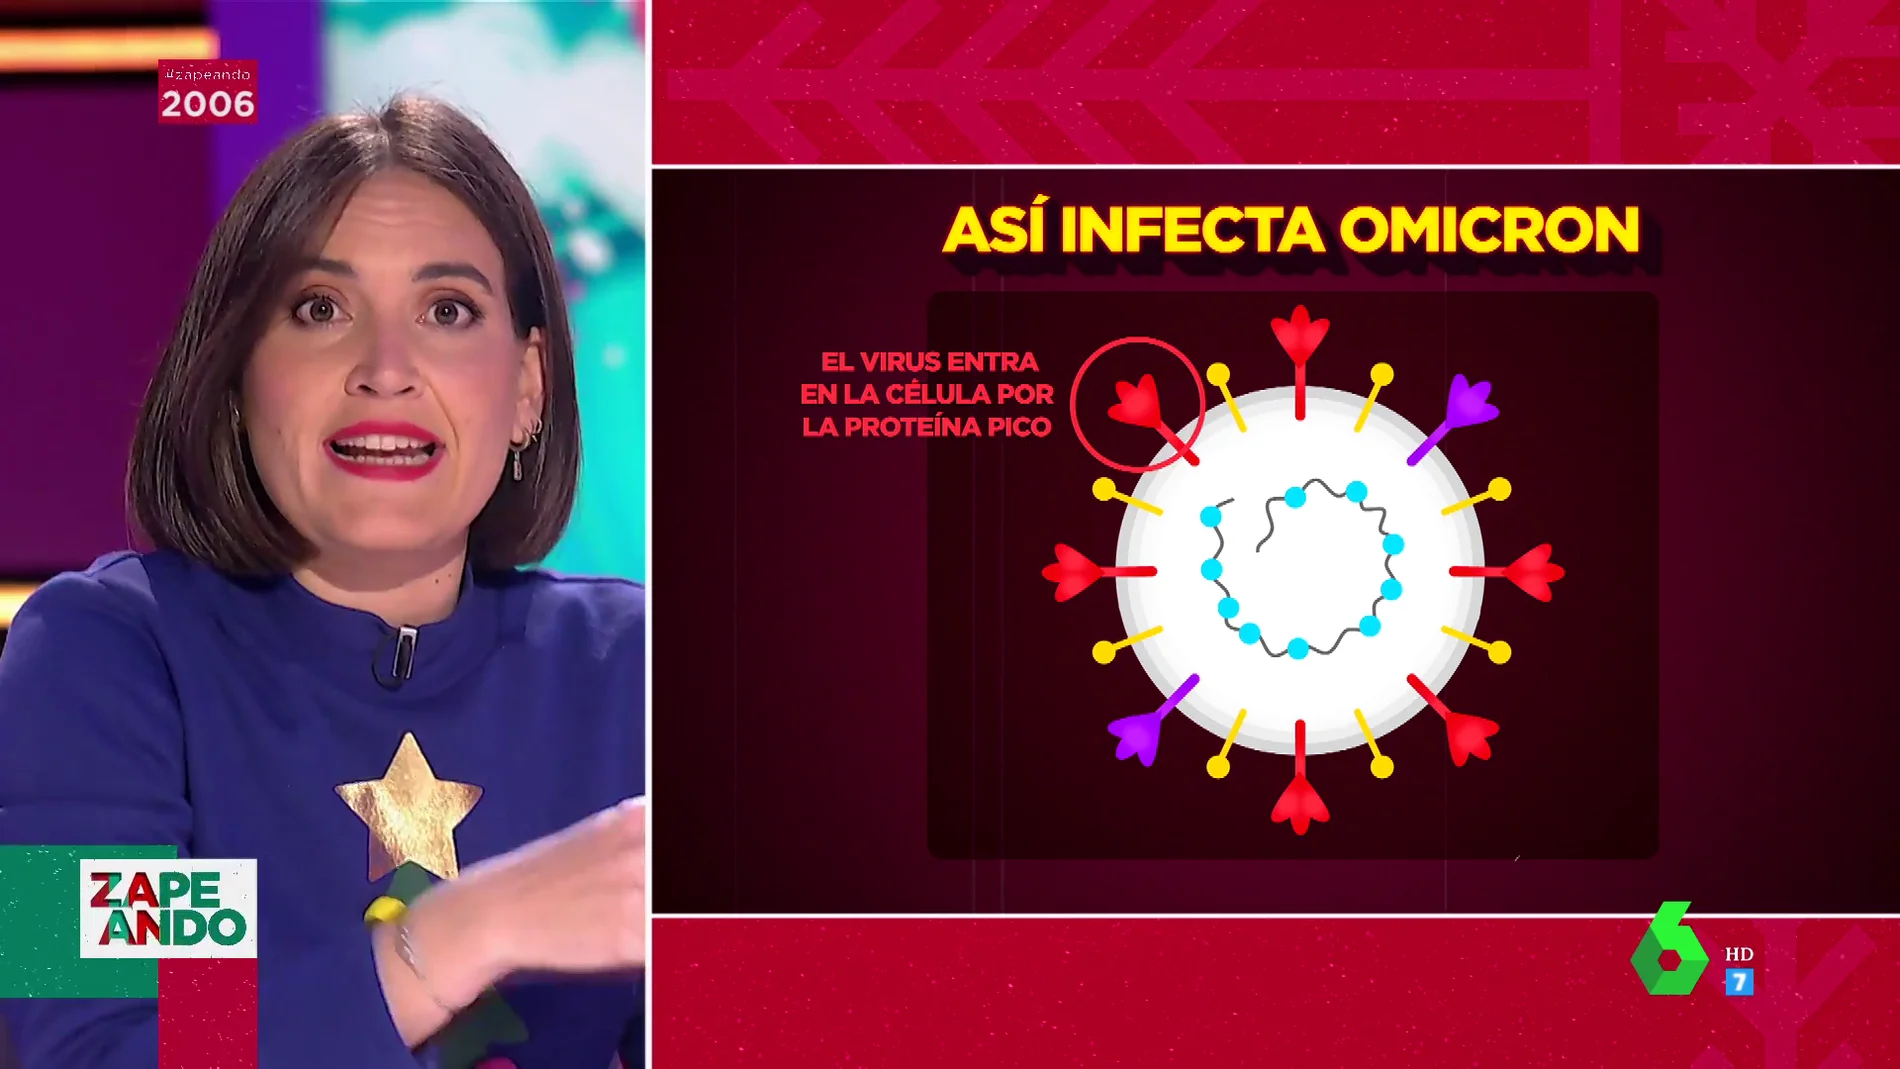 Así infecta Omicron: Boticaria García te explica por qué las personas vacunadas se están contagiando